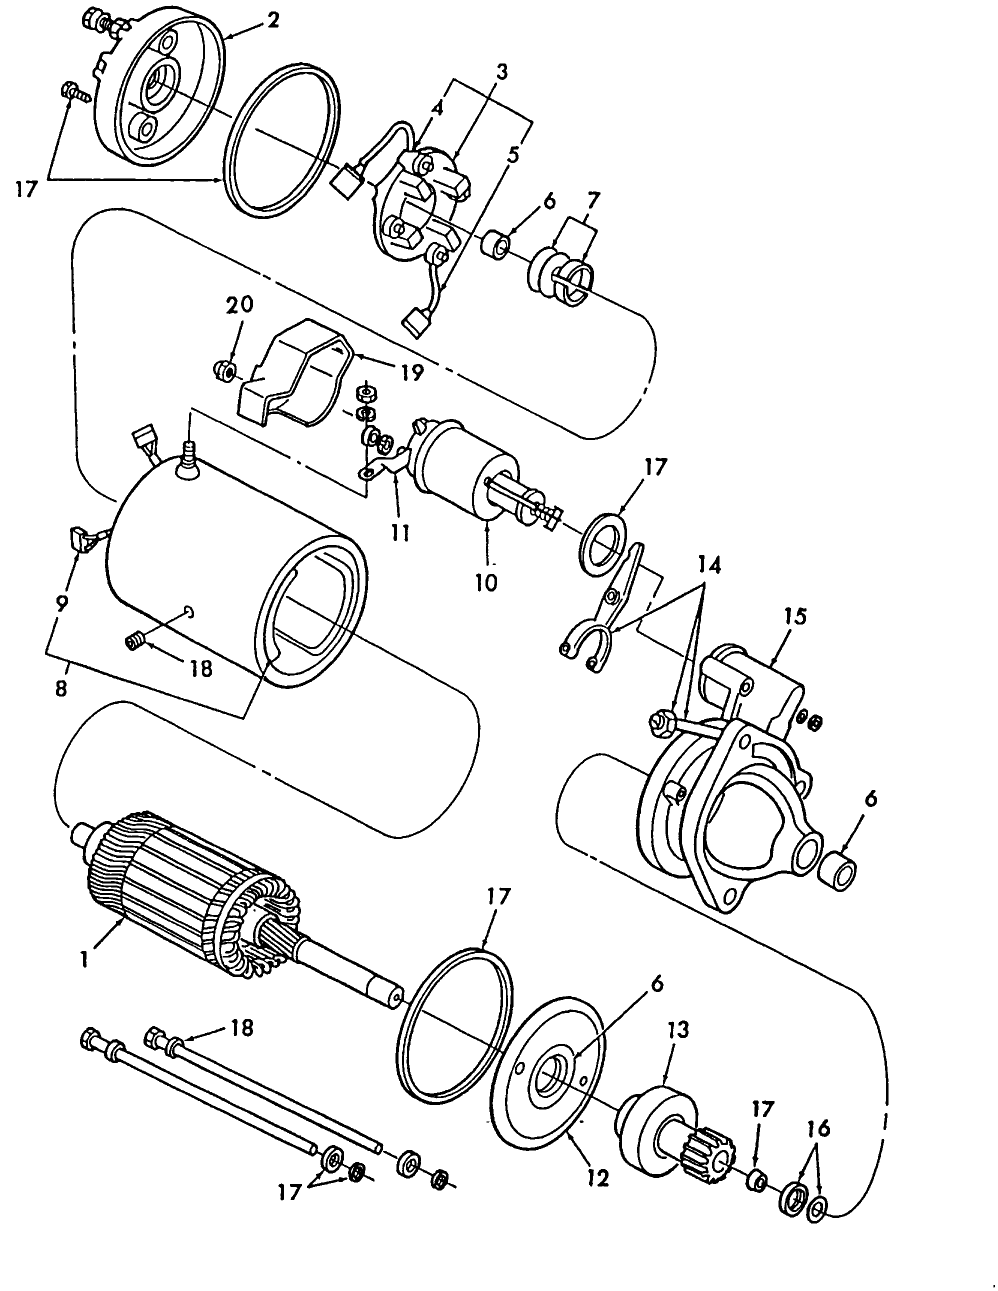 11F01 STARTER MOTOR (11-88/4-91)